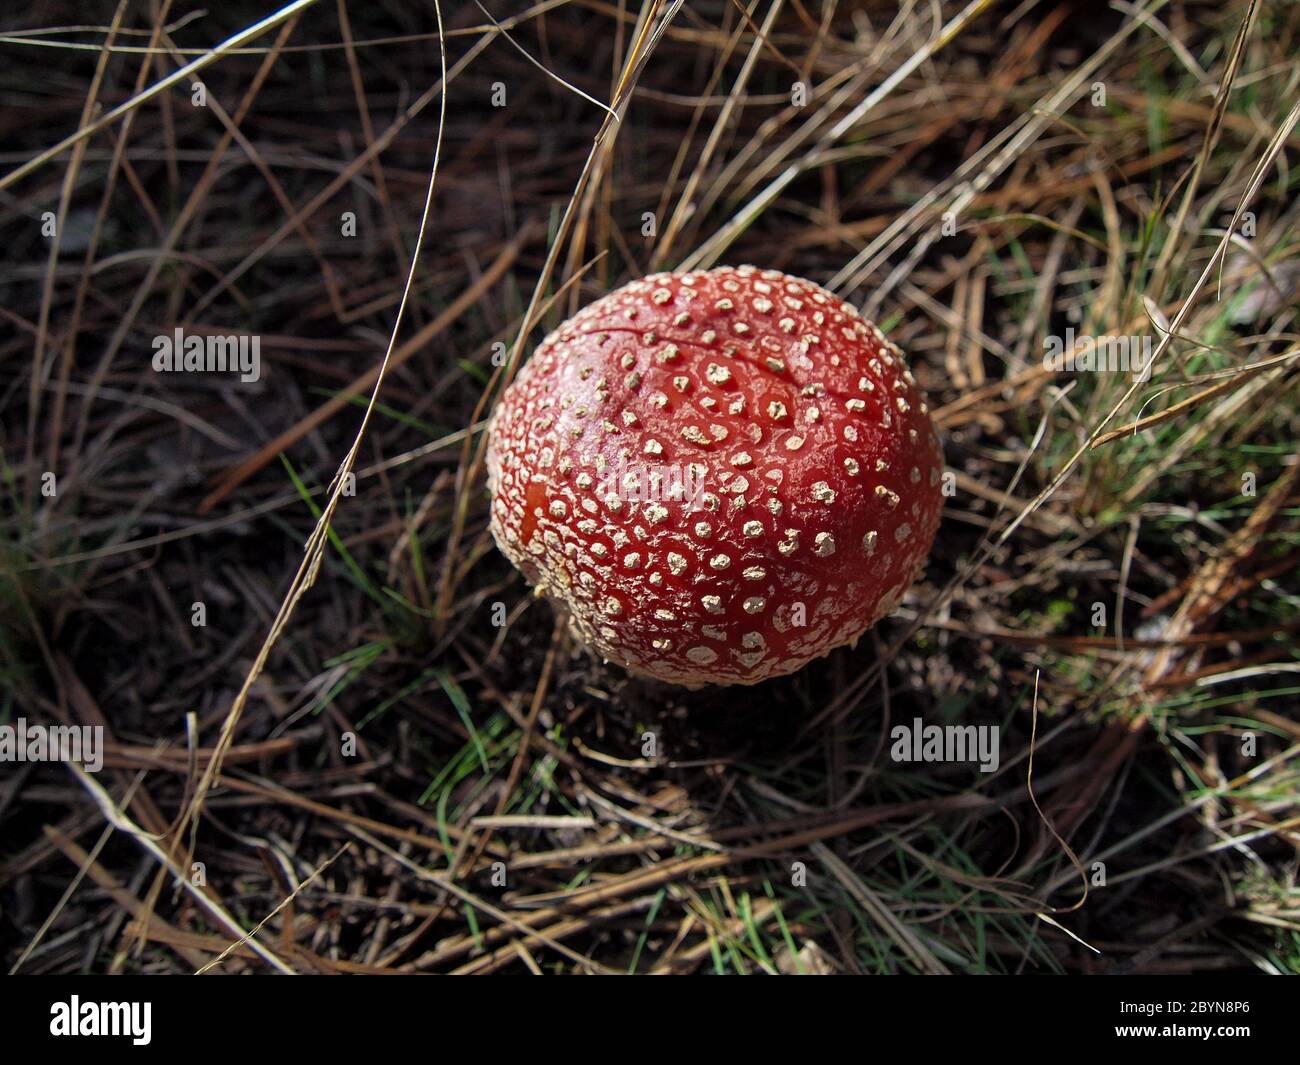 Different types of mushrooms found in the forests of the Serranía de Cuenca. Amanita muscaria,Boletus edulis,russulas,marasmius orades. Stock Photo